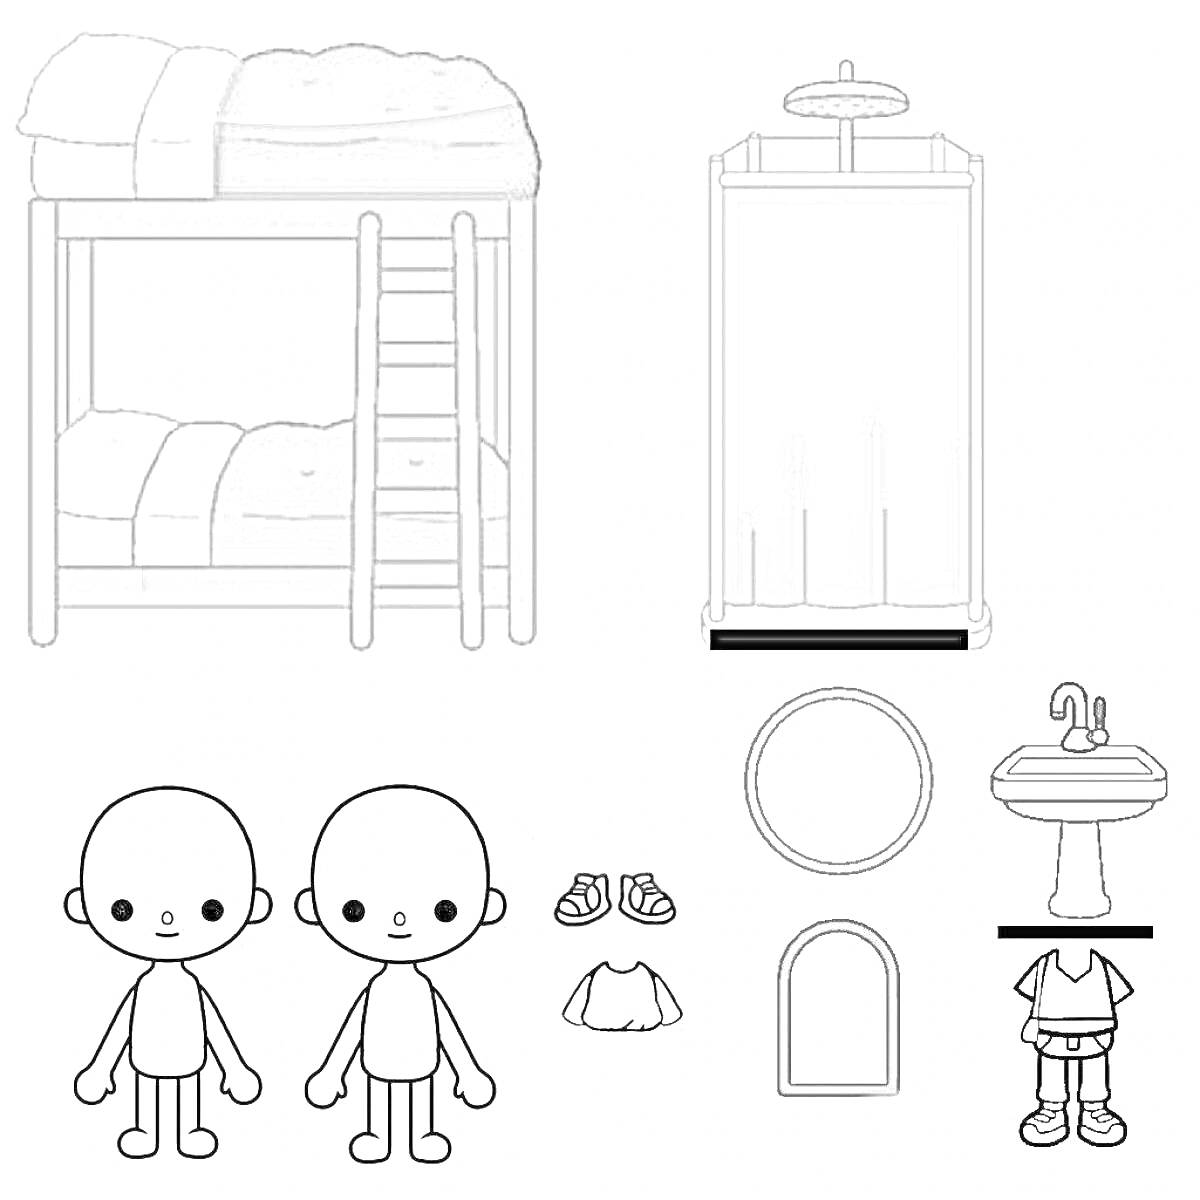 Раскраска Двухъярусная кровать, душ, раковина, зеркало круглое, зеркало прямоугольное, два персонажа без волос, обувь, белая рубашка с ремешком, белая рубашка